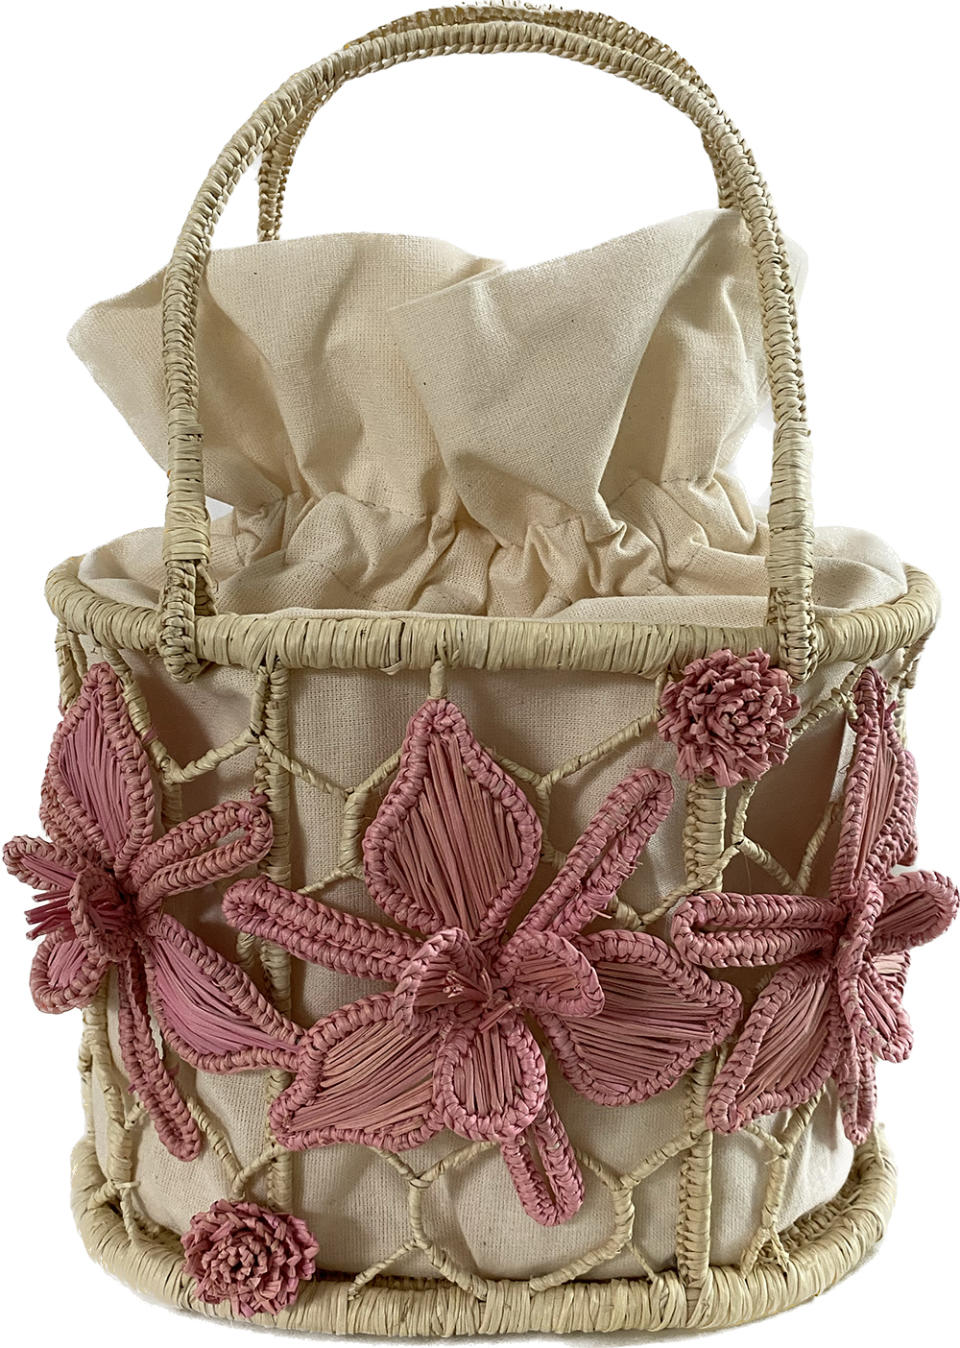 The Pink Anastasia bag.